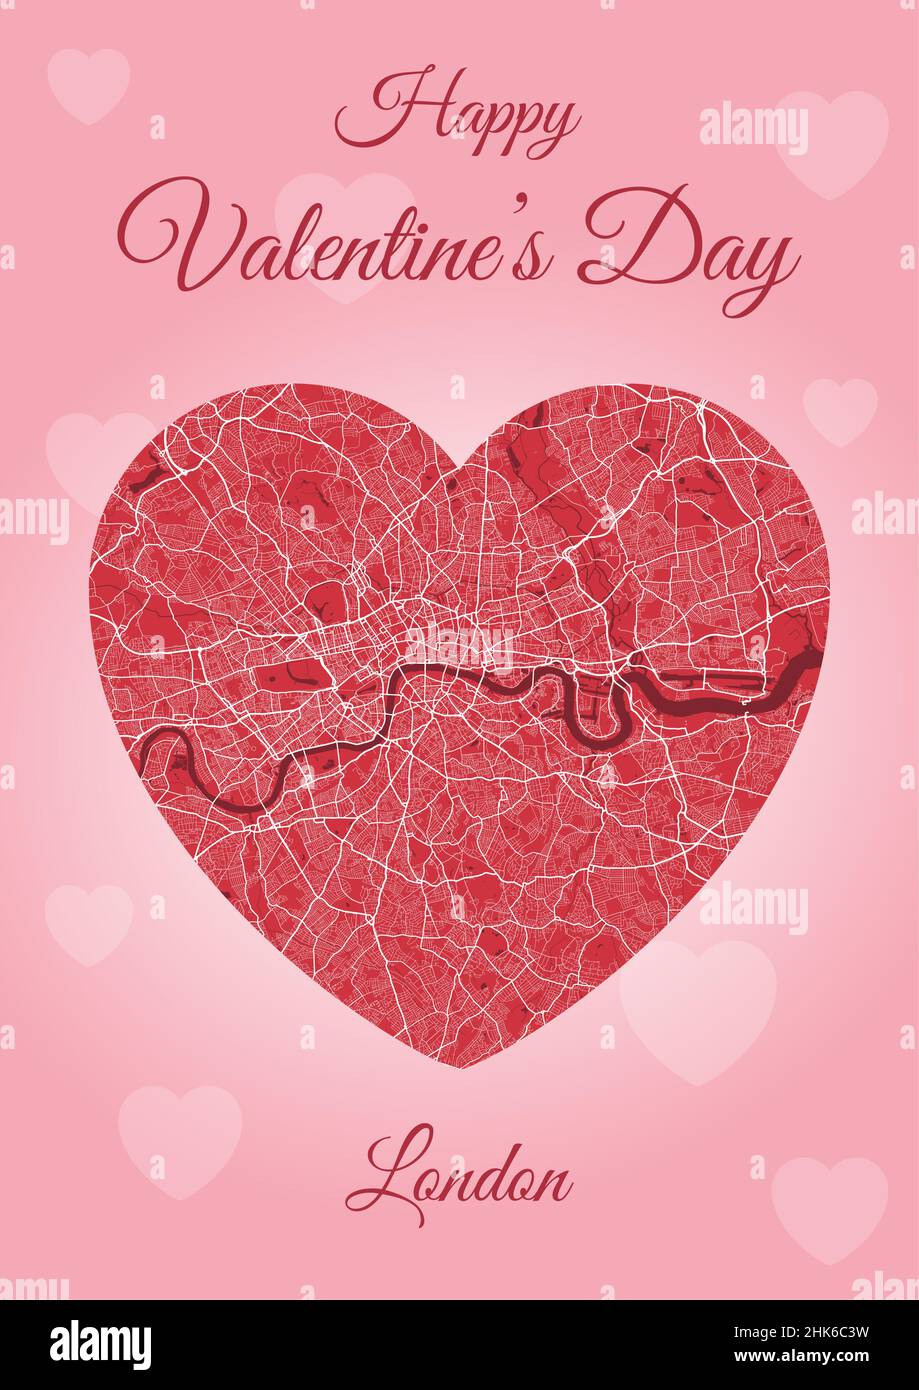 Carte de Saint-Valentin avec carte de Londres en forme de coeur.Illustration verticale A4 de vecteur de couleur rose et rouge.J'adore le paysage urbain. Illustration de Vecteur